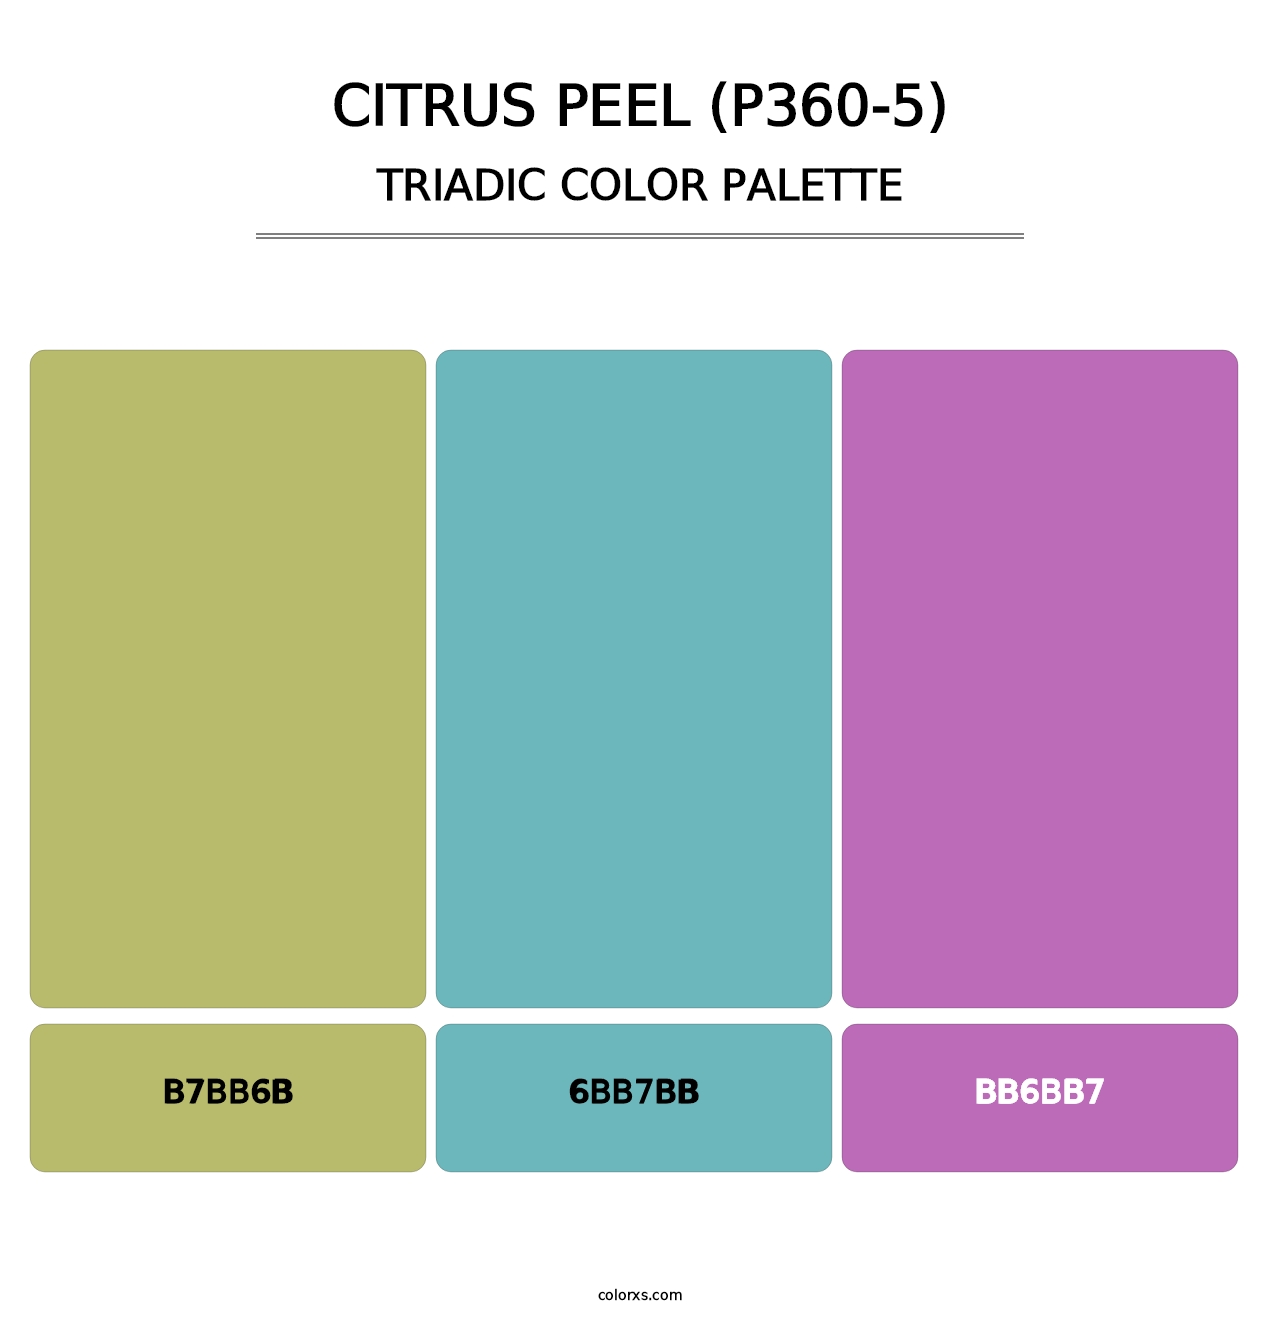 Citrus Peel (P360-5) - Triadic Color Palette